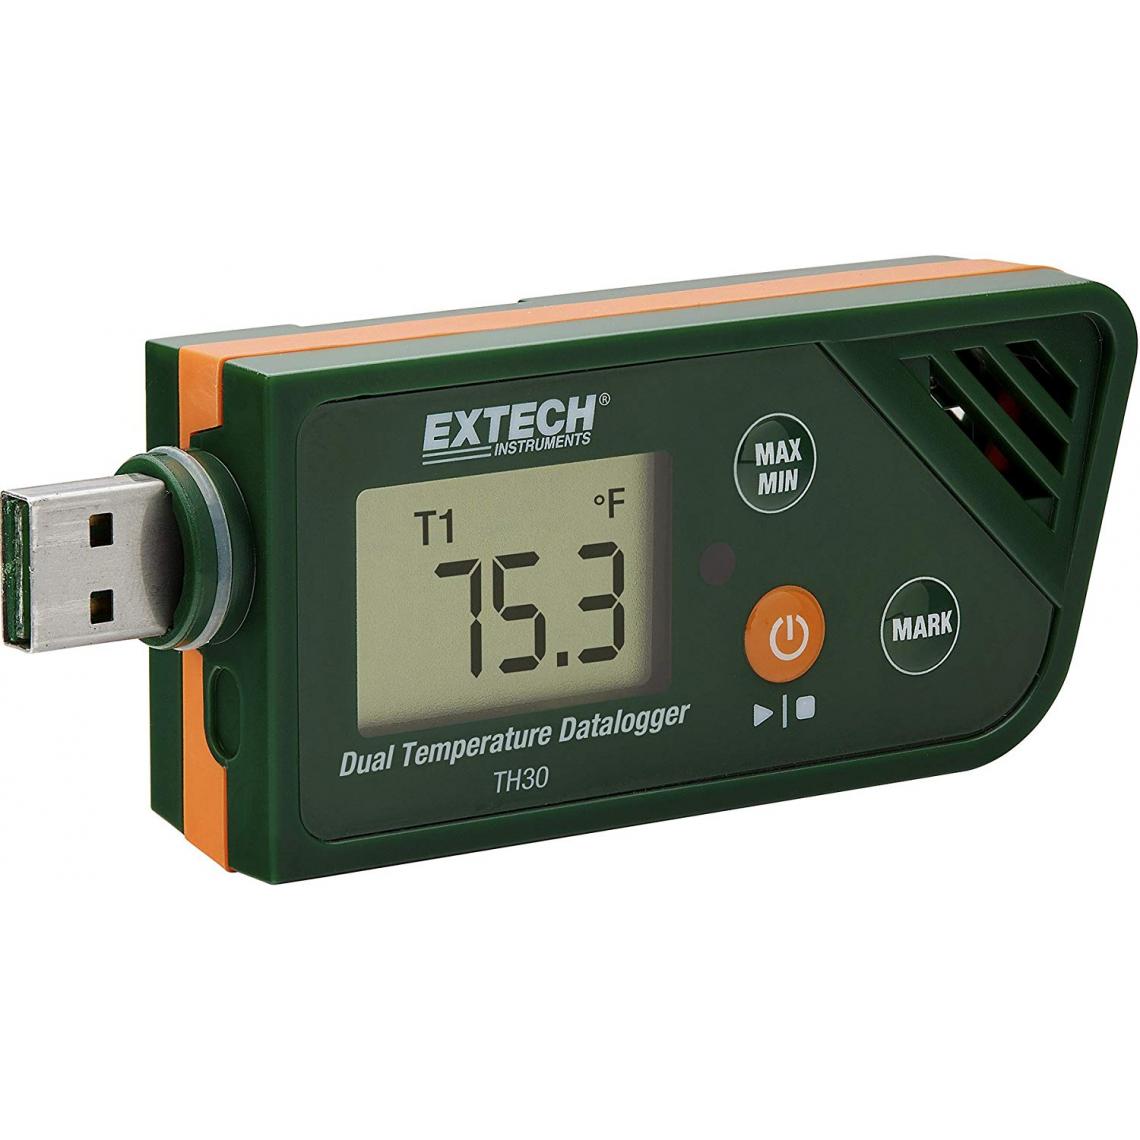 Inconnu - Extech TH30 Enregistreur de données de température Unité de mesure température -30 à +70 °C fonction PDF - Appareils de mesure